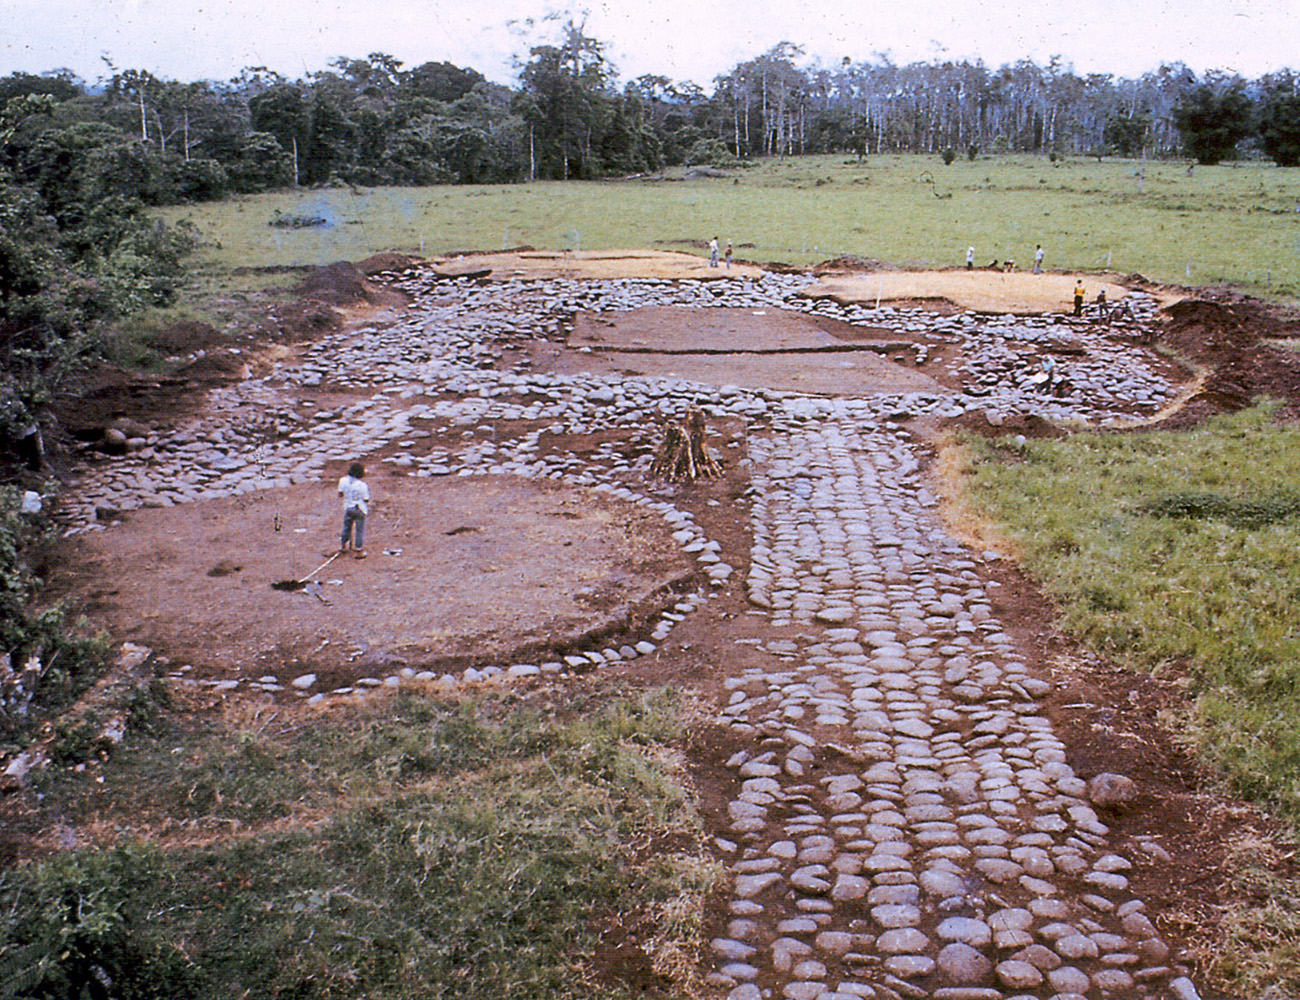 Sitio arqueológico "La Cabaña", Caribe central 1975